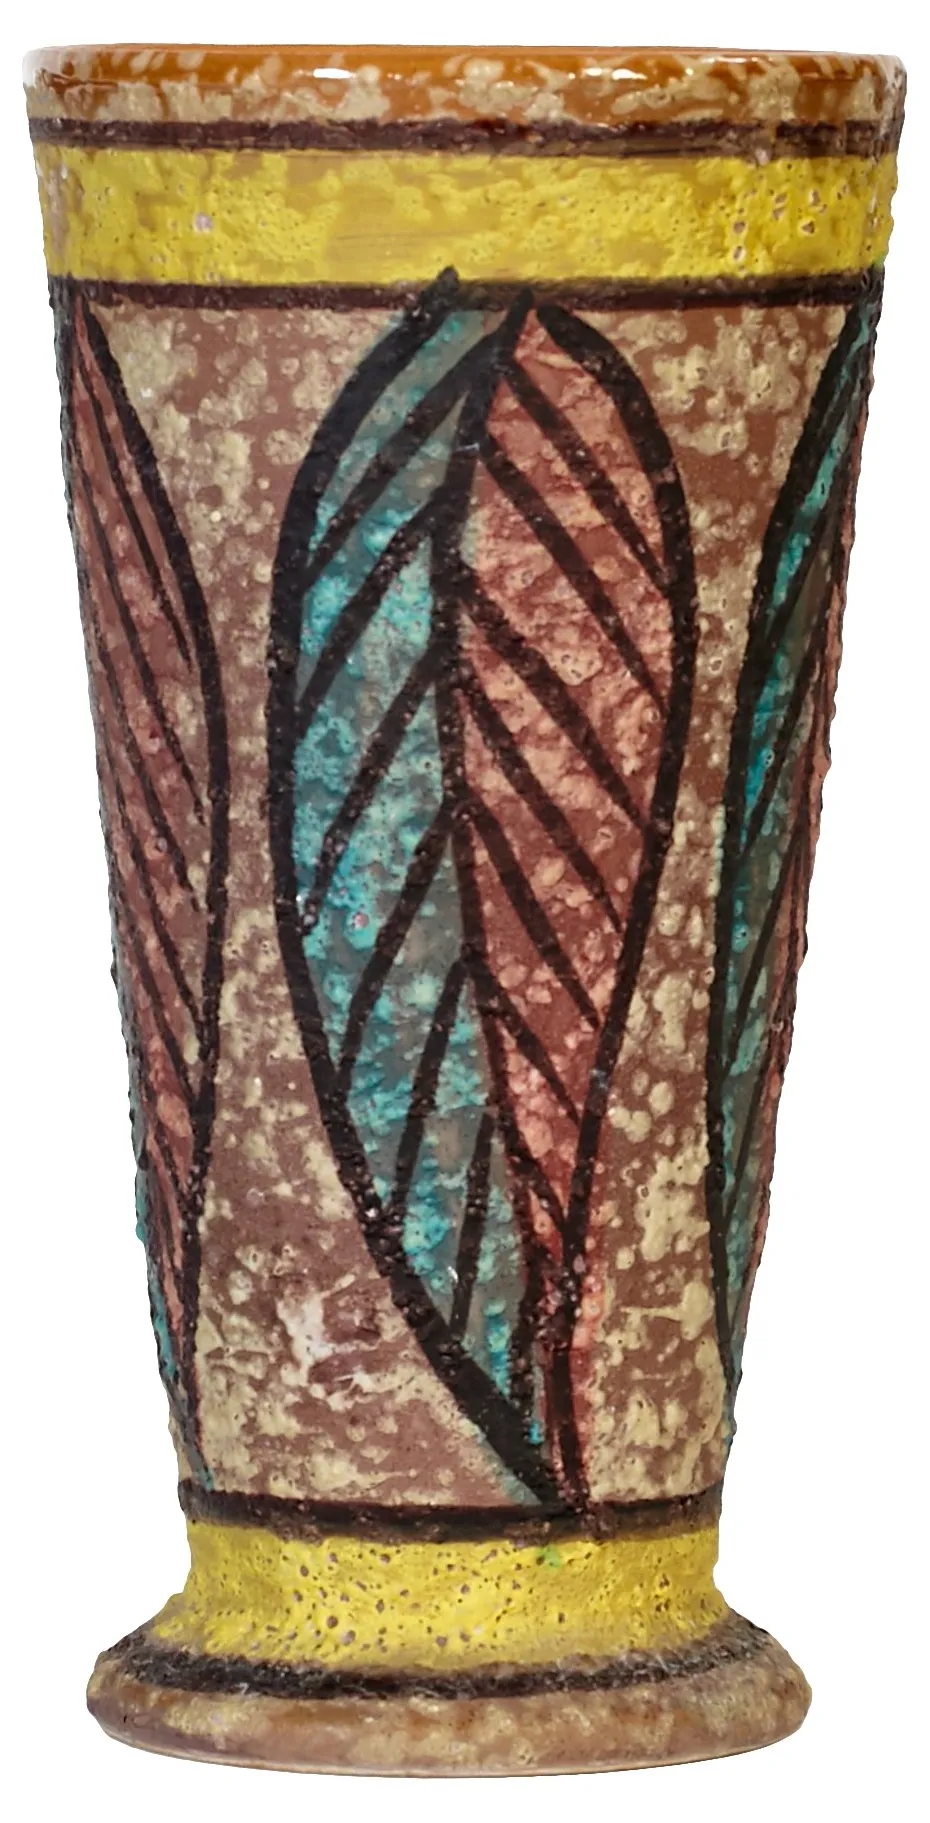 1960s Italian Ceramic Vase - 2-b-Modern - Brown